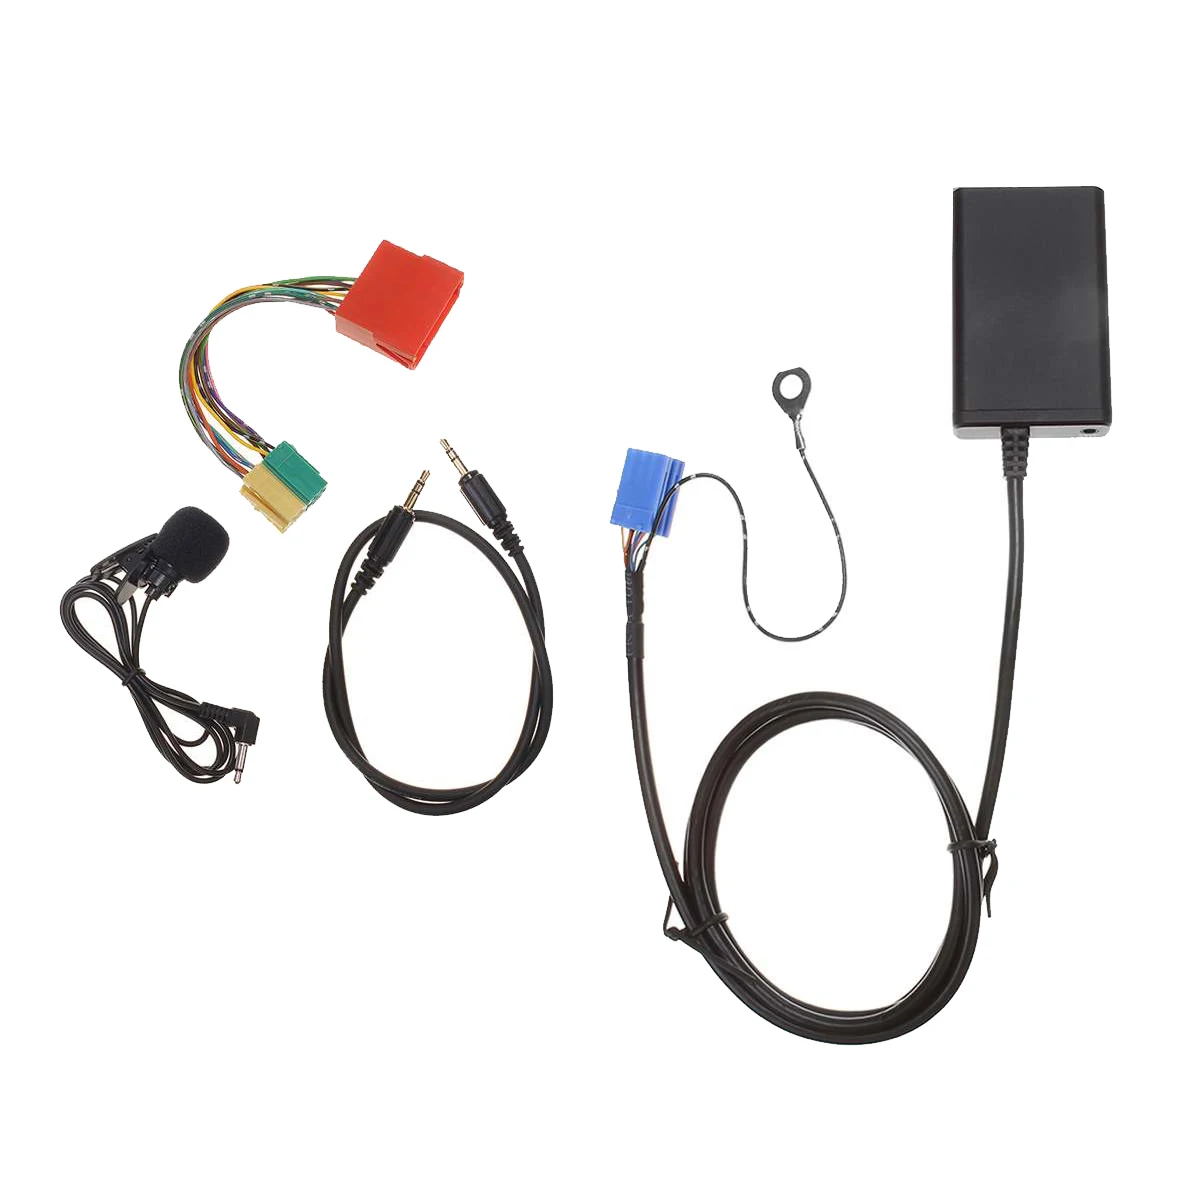 

Автомобильный Bluetooth Aux гарнитура USB адаптер музыкальный аудио кабель для Audi A3 8L 8P A4 B5-B7 A6 4B A8 4D